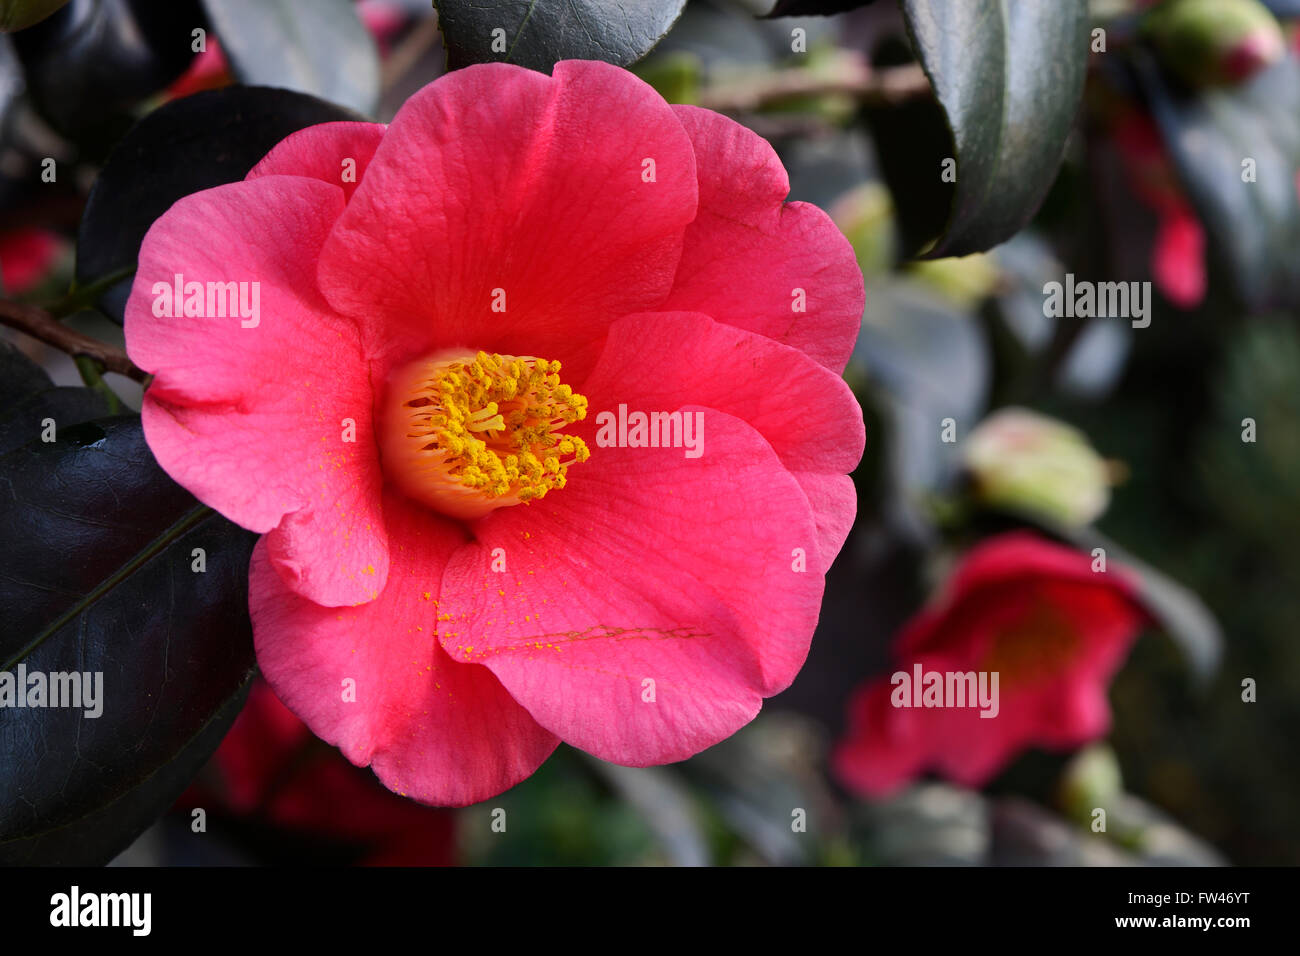 Kamelie (Camellia japonica), Vorkommen Asien Stock Photo